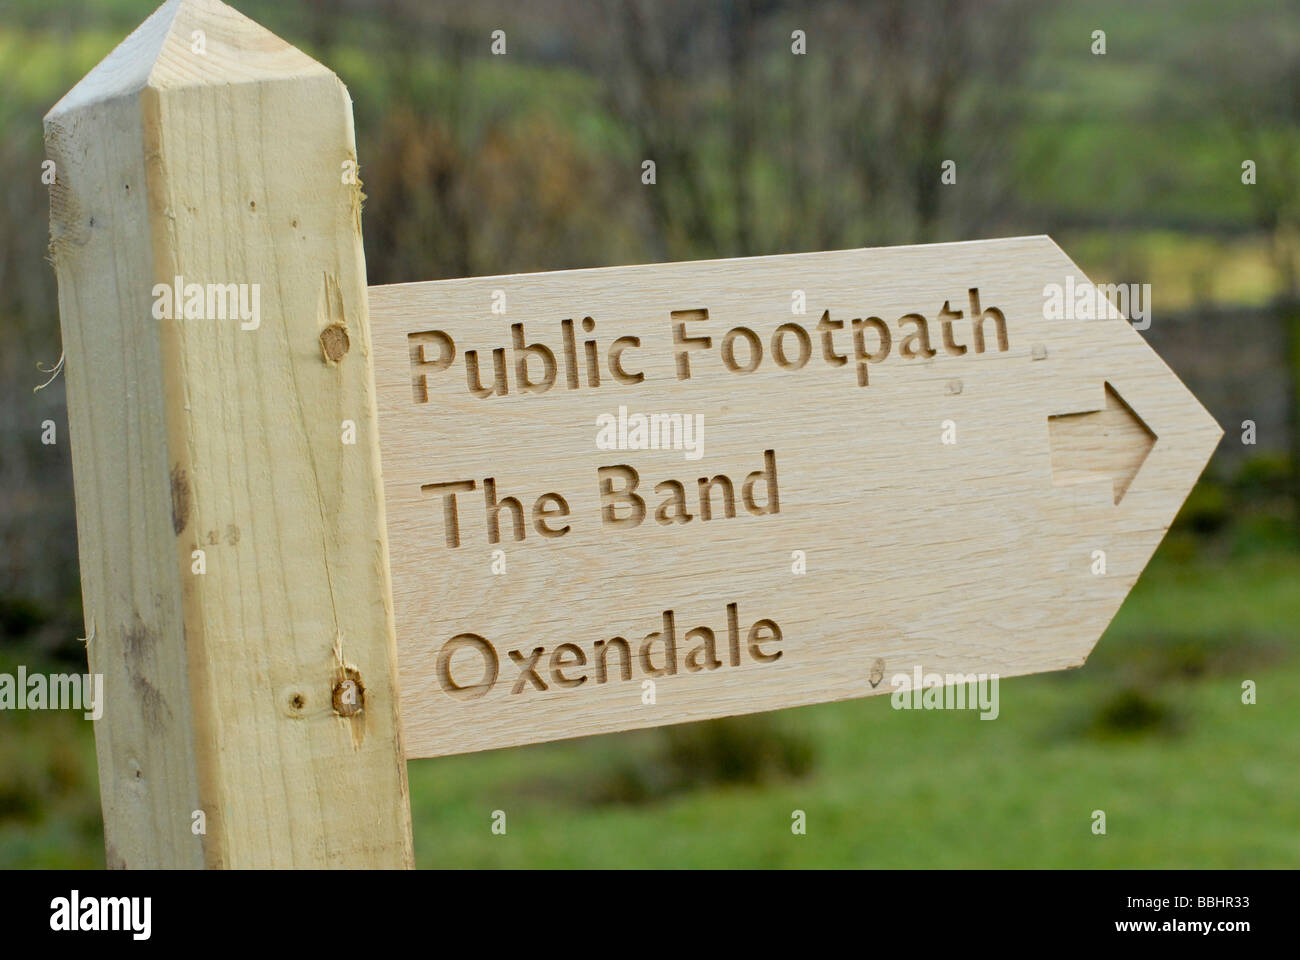 Hölzerne öffentlichen Fußweg zu unterzeichnen, im Lake District weisen den Weg zu der Band und oxendale Stockfoto